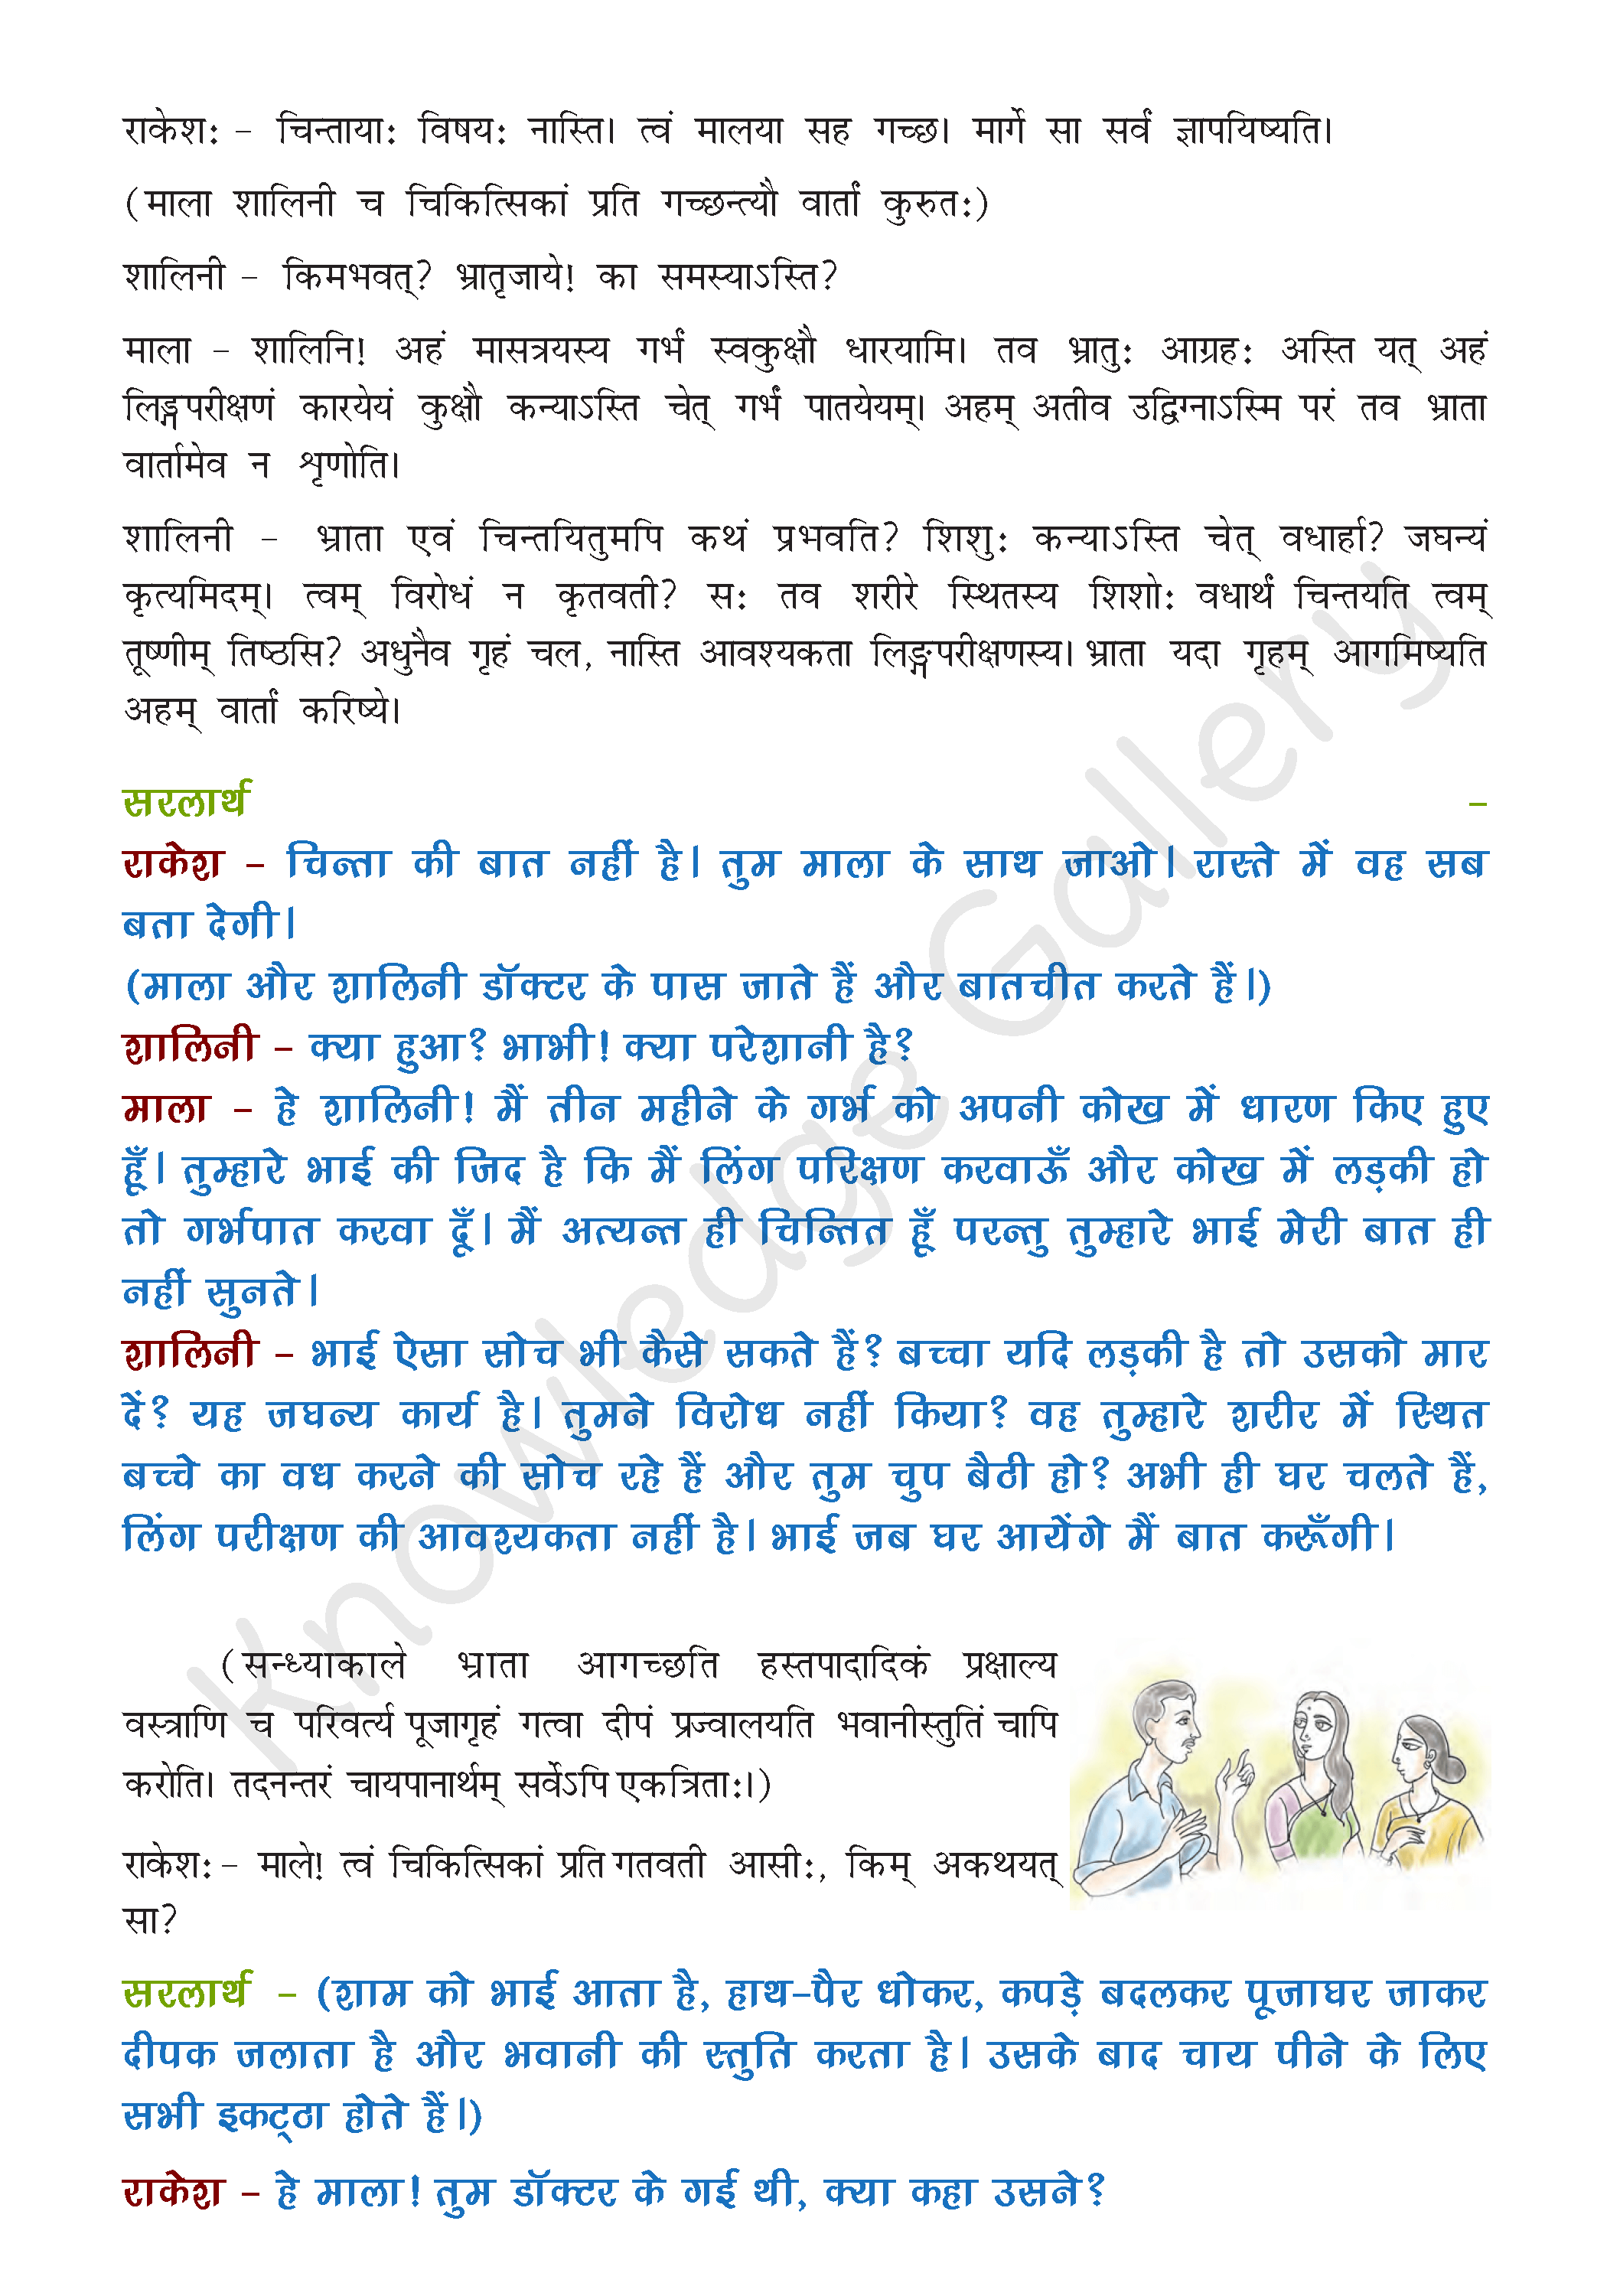 NCERT Solution For Class 8 Sanskrit Chapter 6 part 2